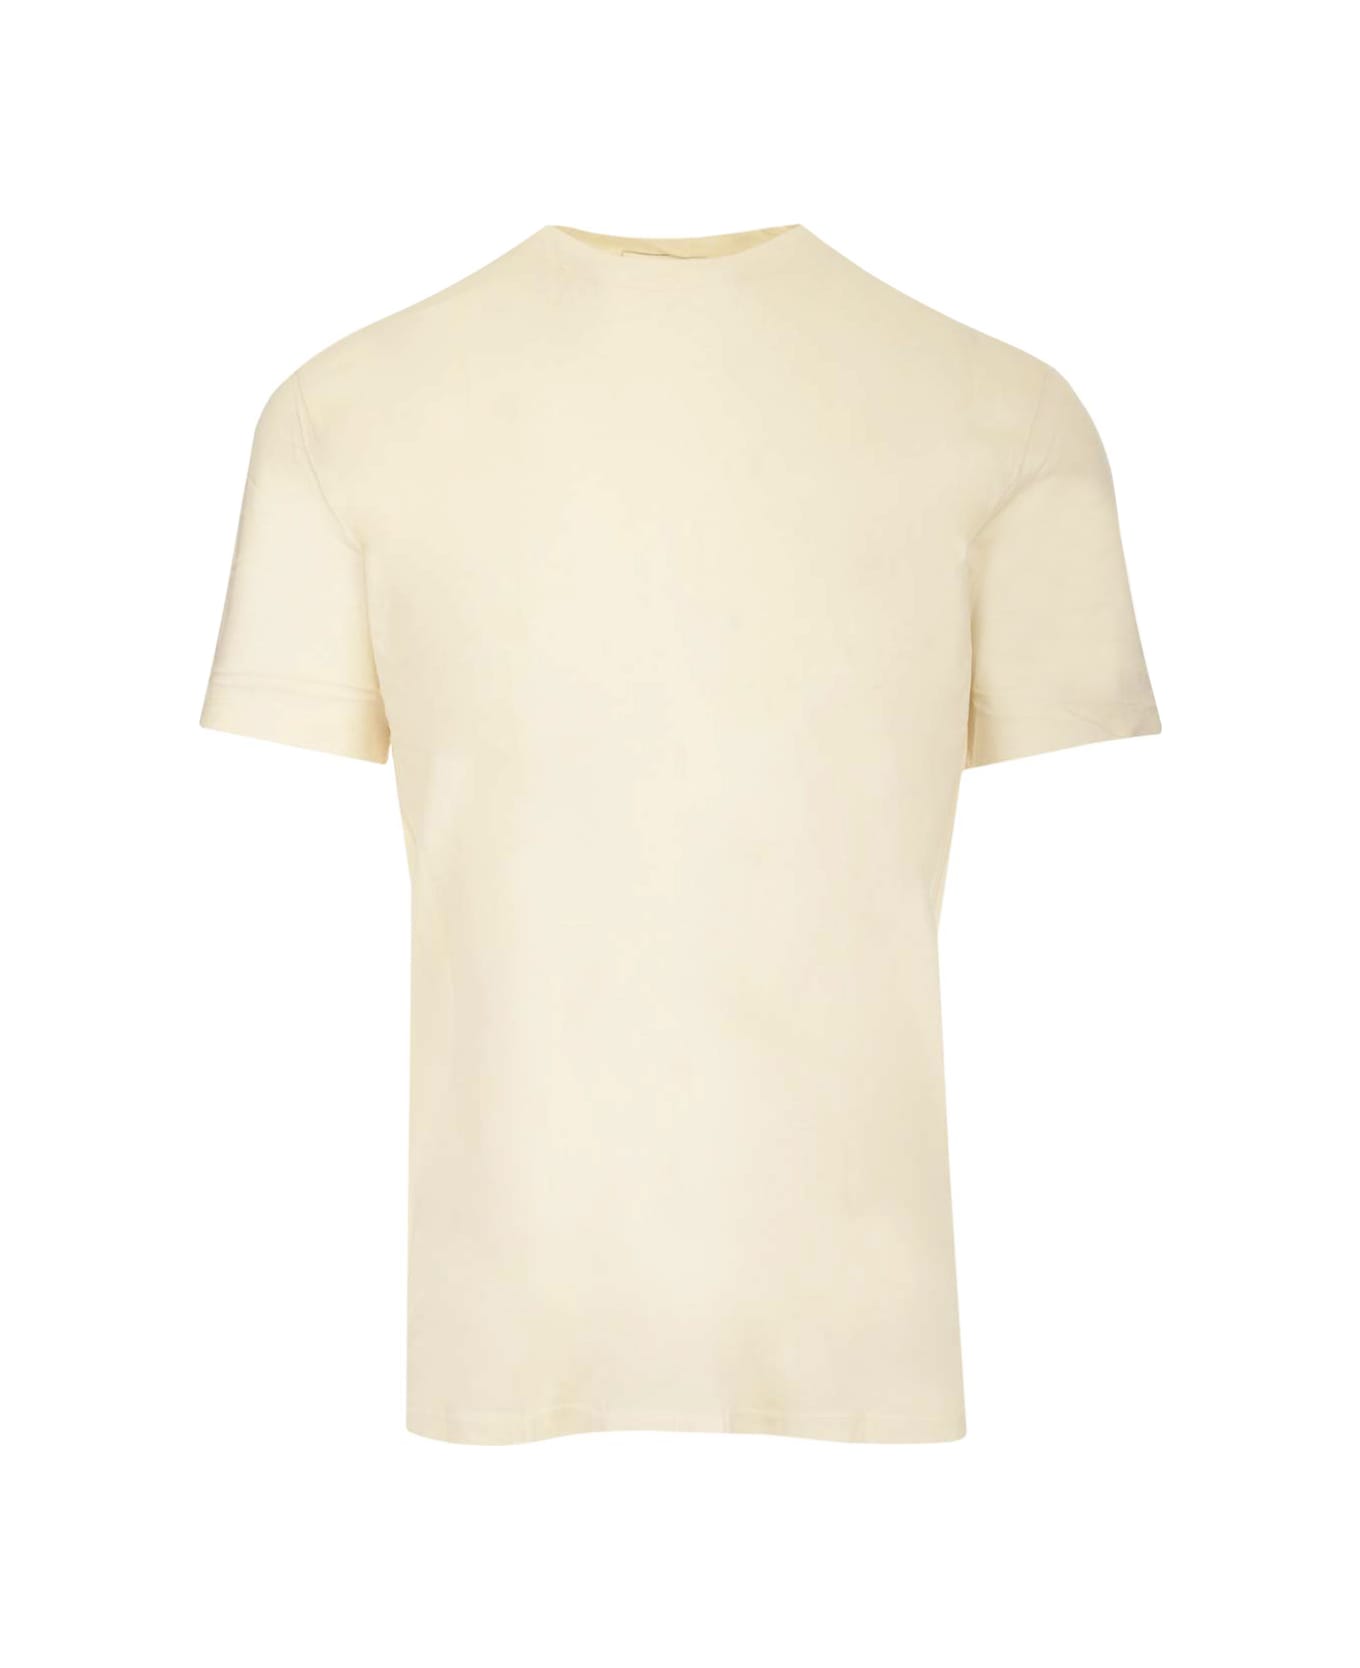 Maison Margiela White Cotton T-shirt - WHITE/NEUTRALS